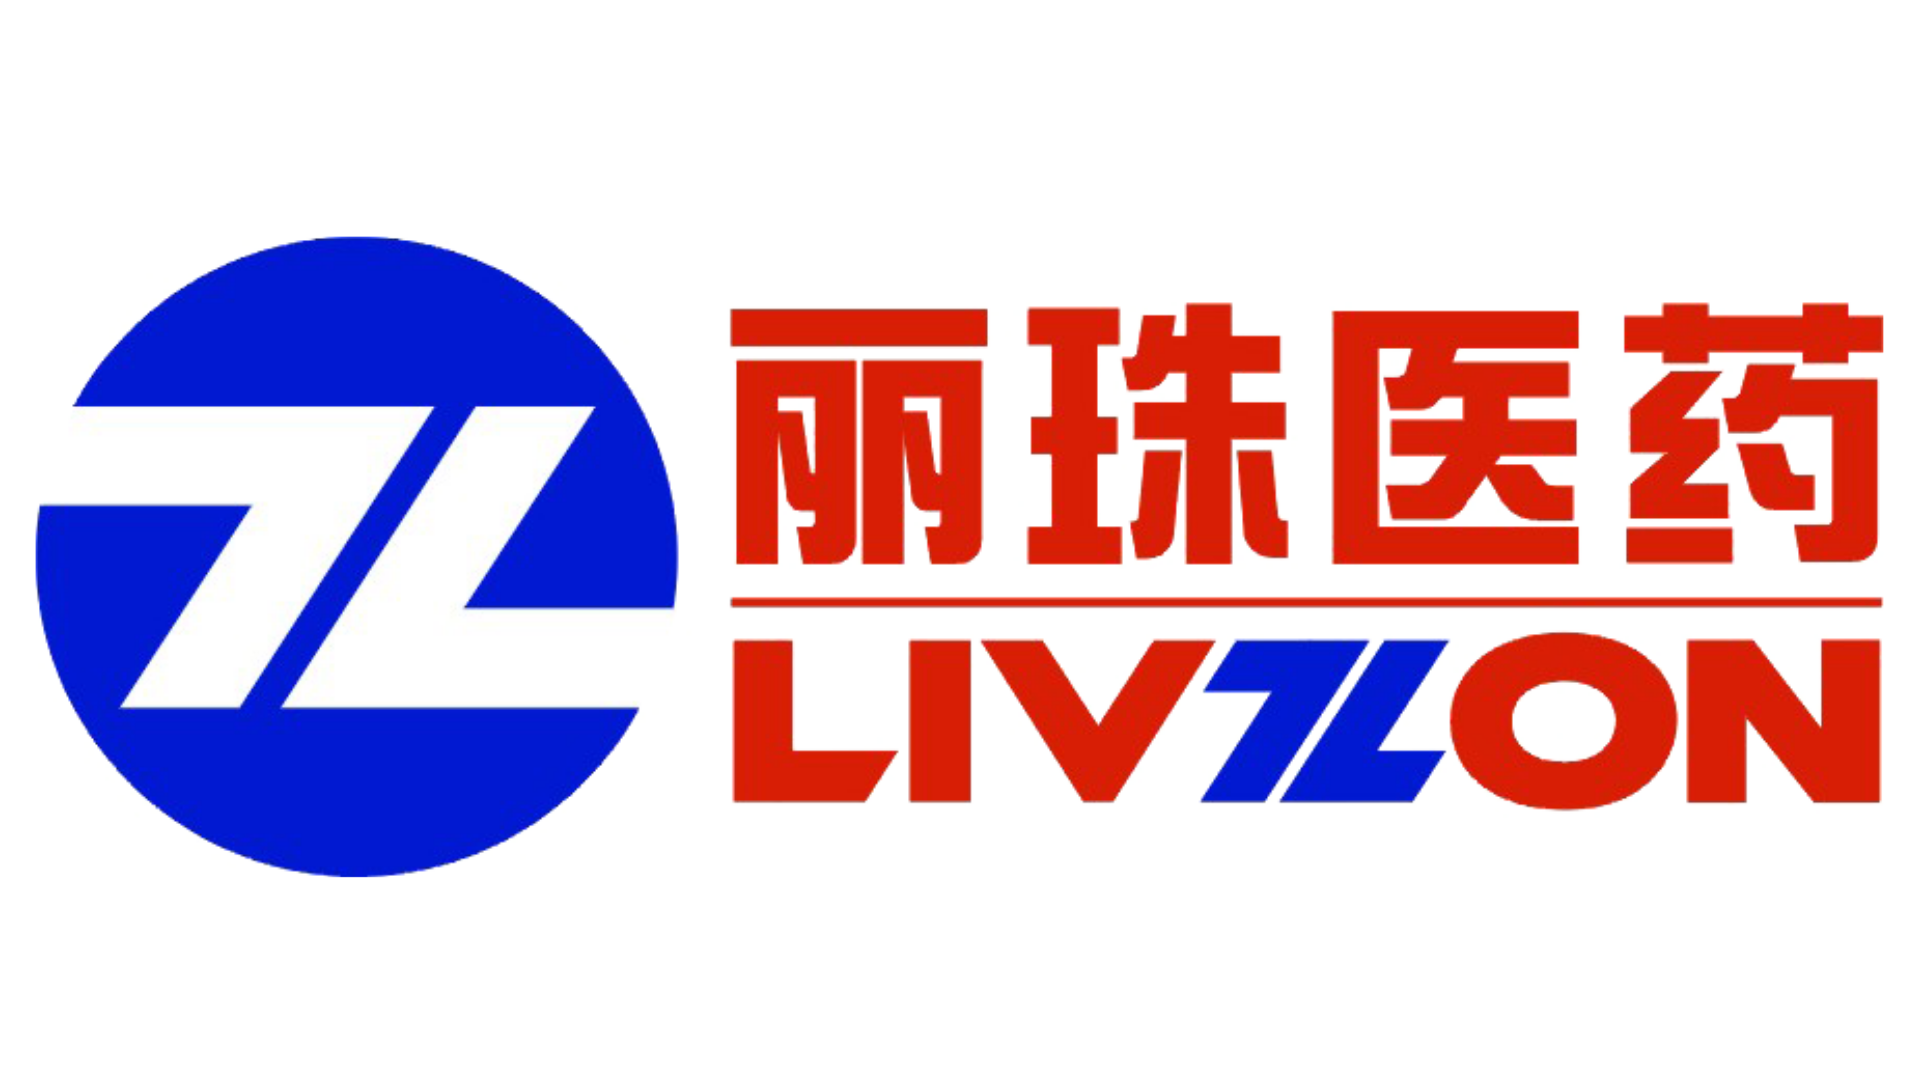 LTS und LIVZON schließen Lizenz- und Kooperationsvereinbarung zur Entwicklung und Kommerzialisierung des ASENAPIN-TTS